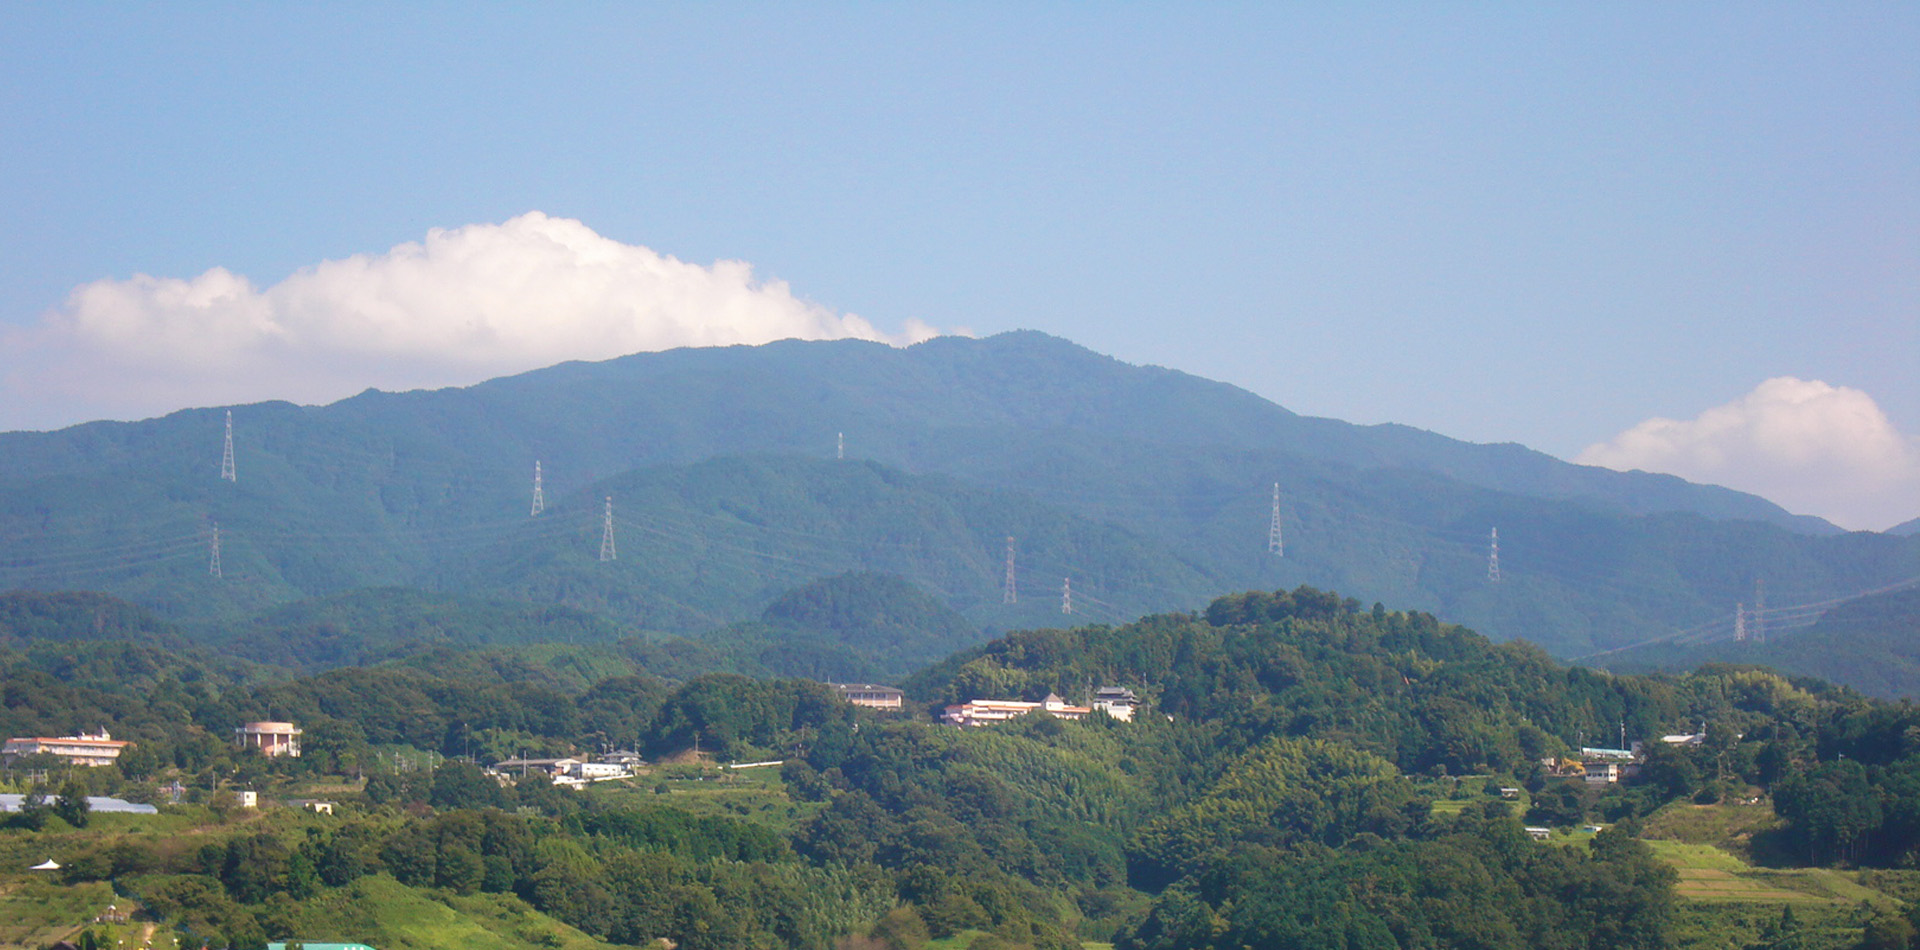 日本山岳遺産にも登録される名山「金剛山」